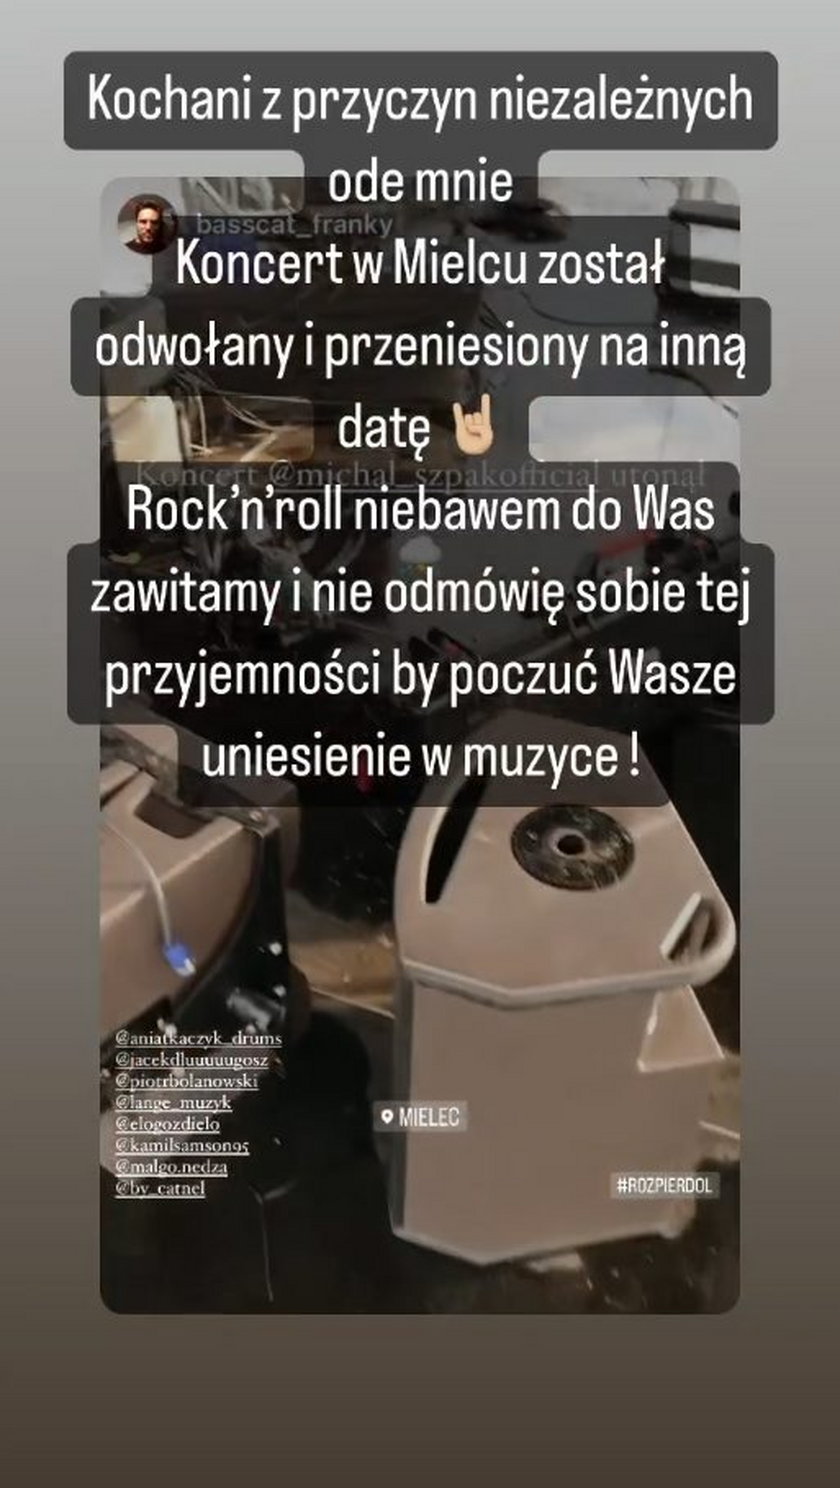 Michał Szpak poinformował o odwołaniu jego koncertu. 